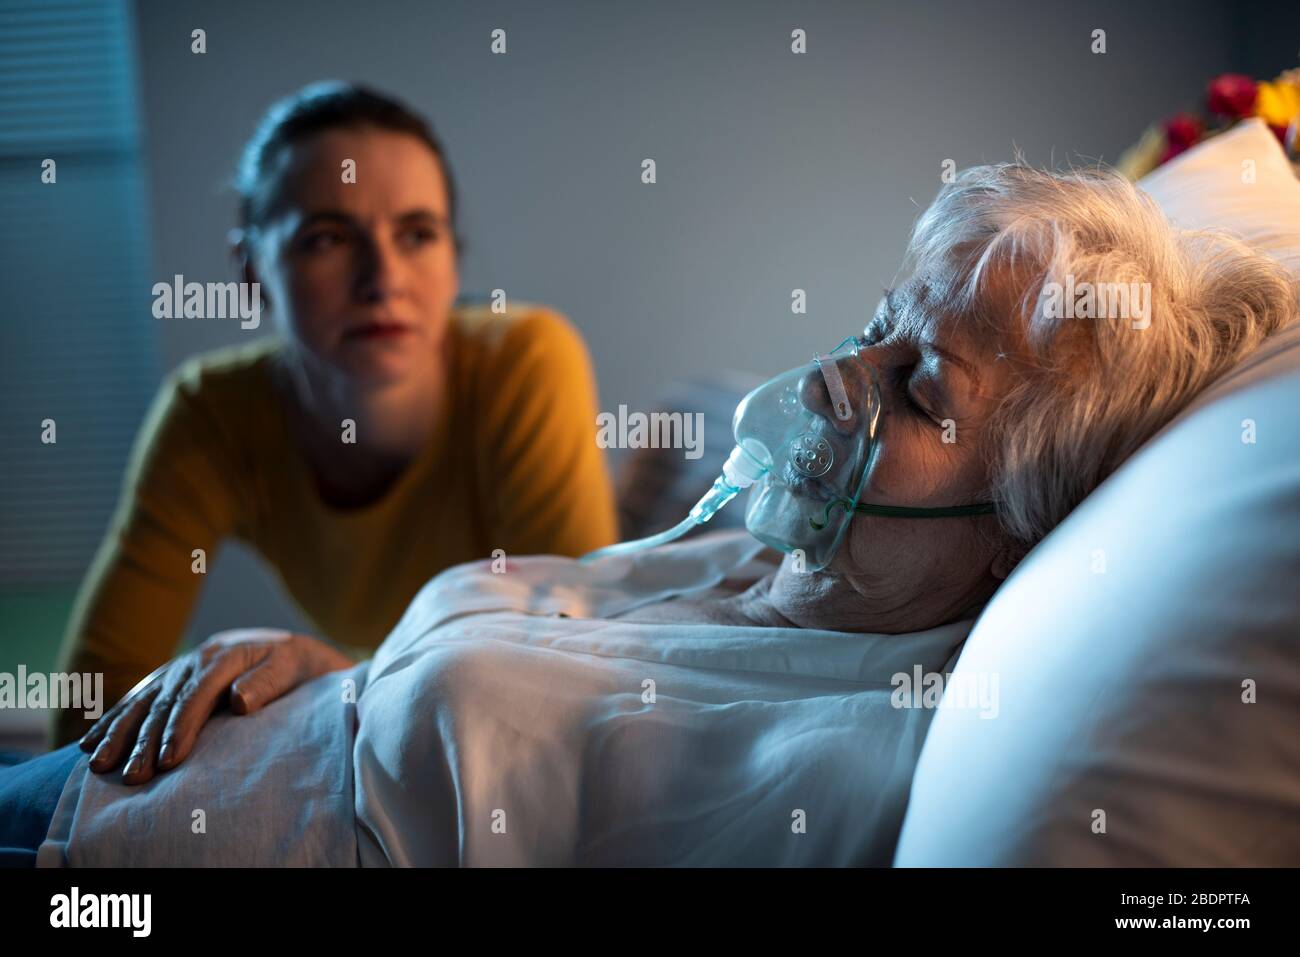 Fille triste aidant sa mère âgée malade à l'hôpital, elle est assise à côté d'elle Banque D'Images